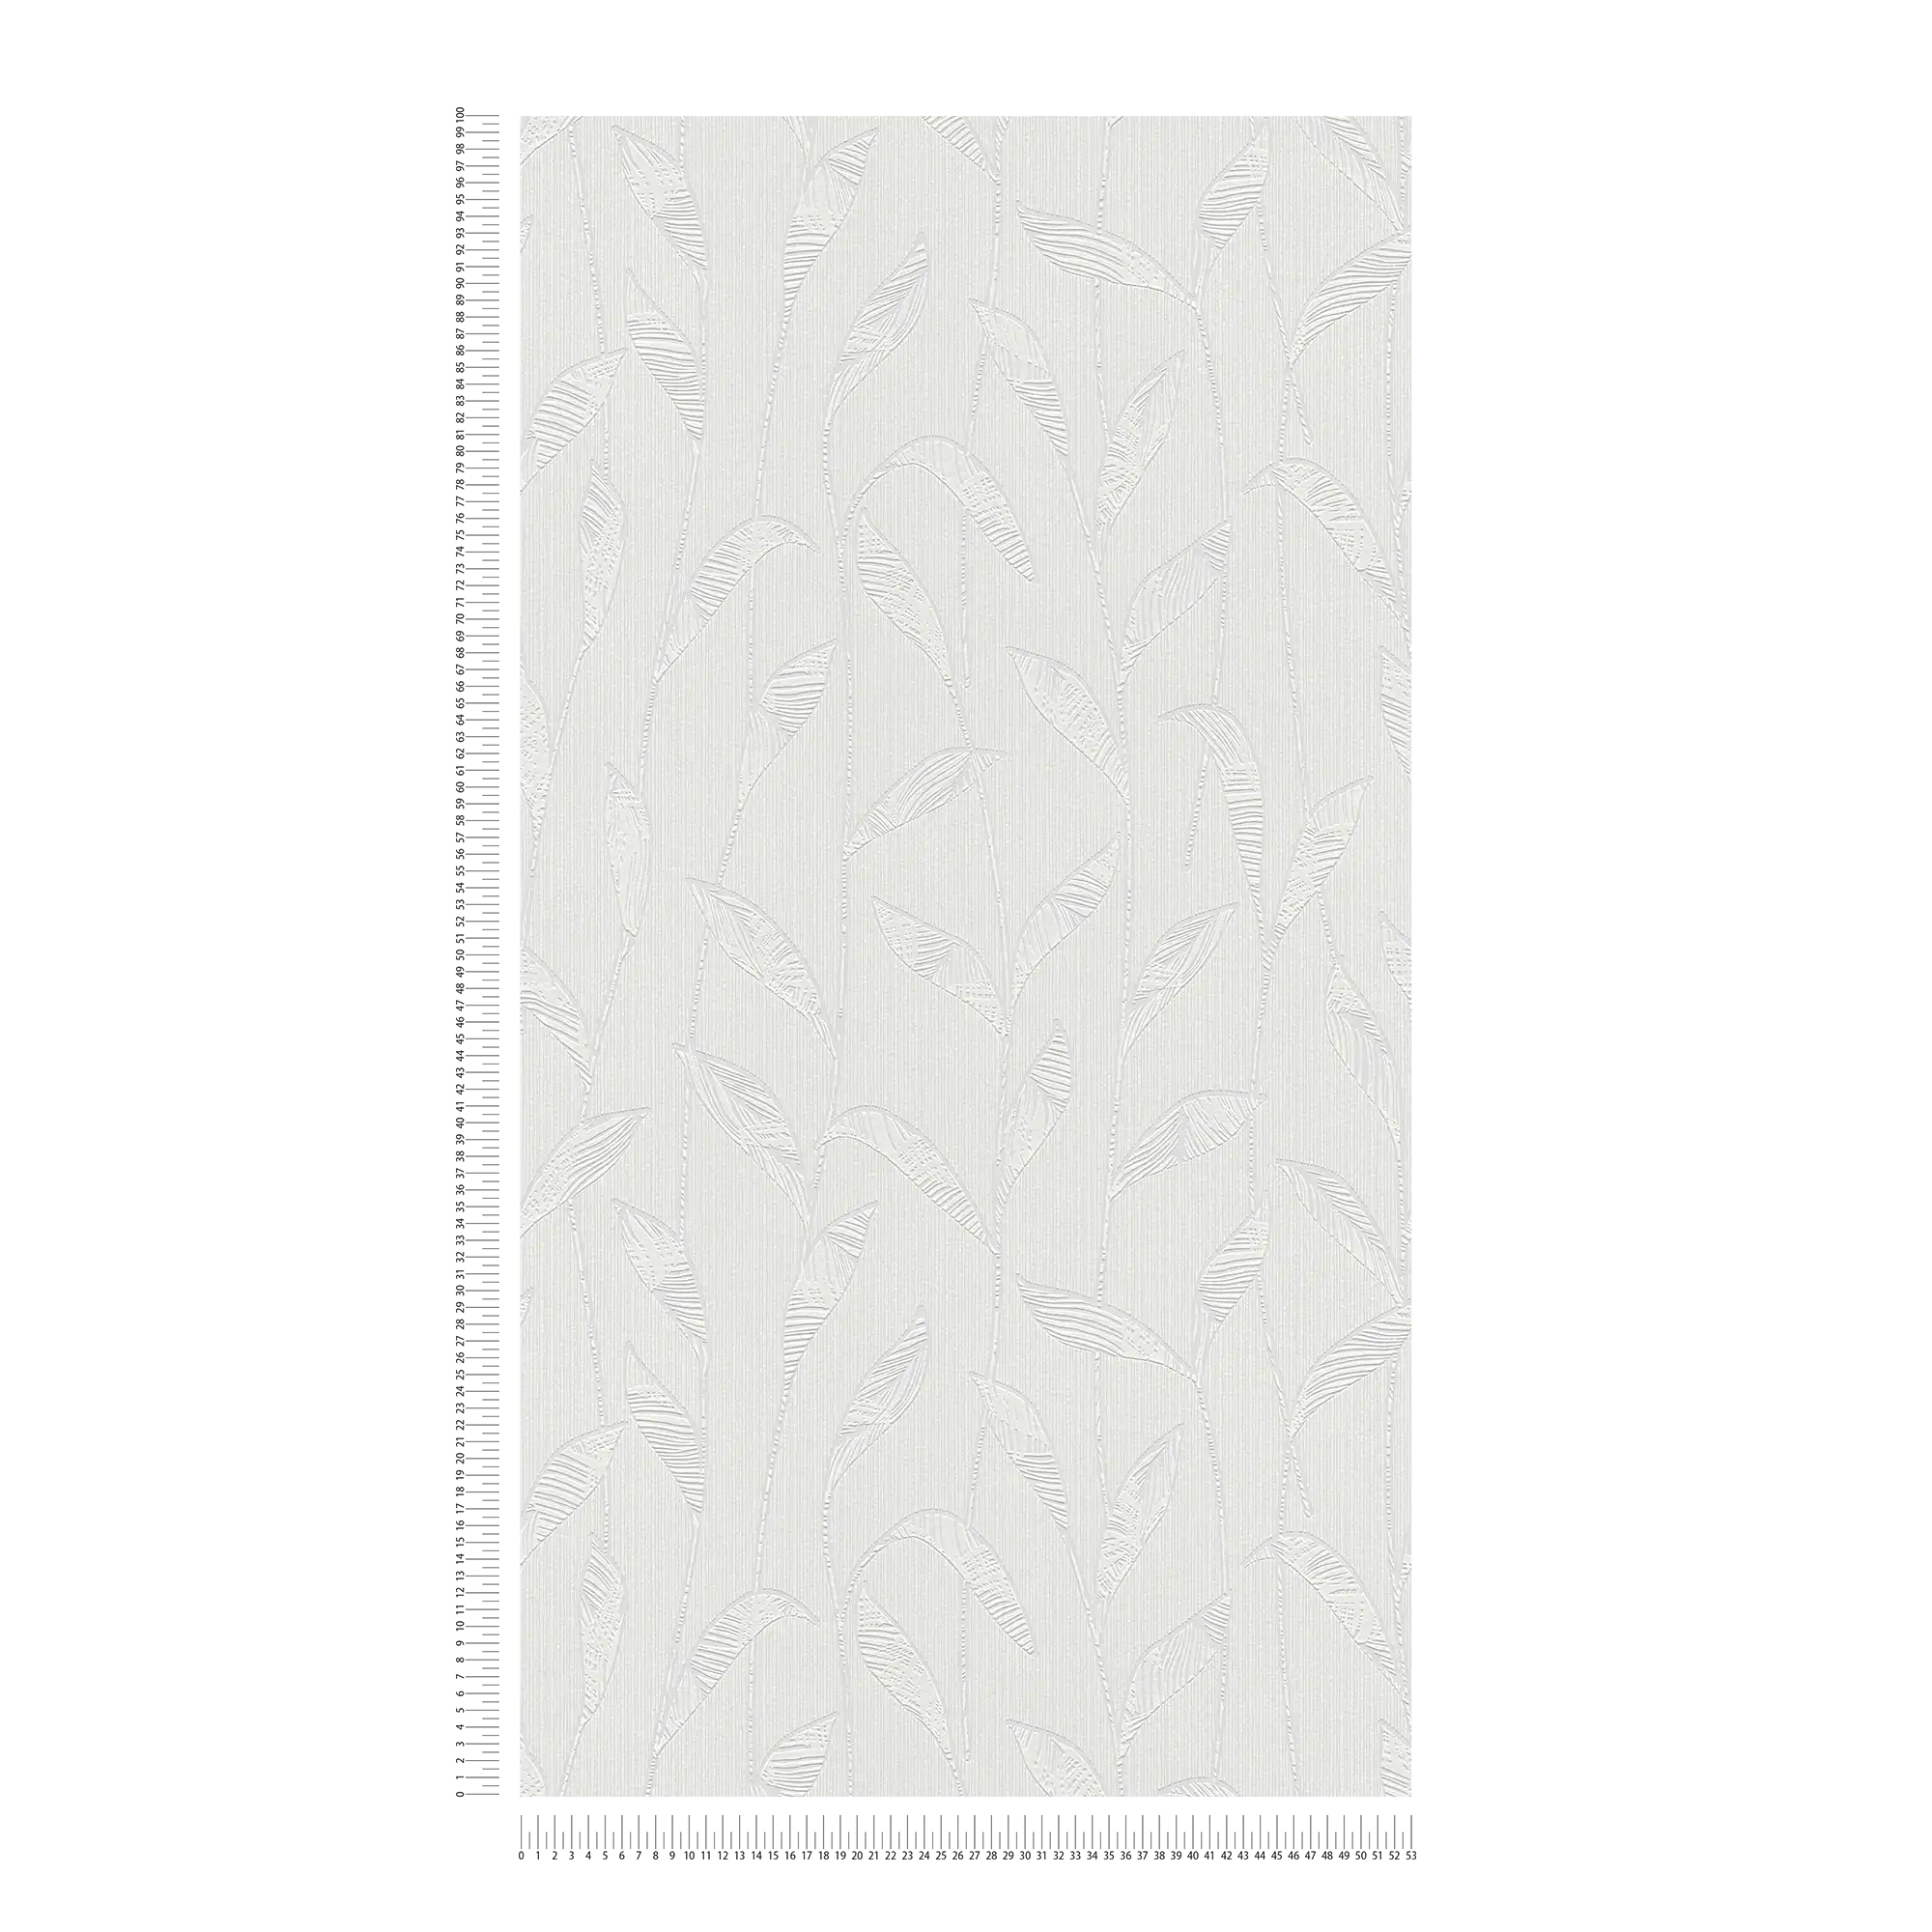             Carta da parati in tessuto non tessuto con disegno di foglie da dipingere - verniciabile
        